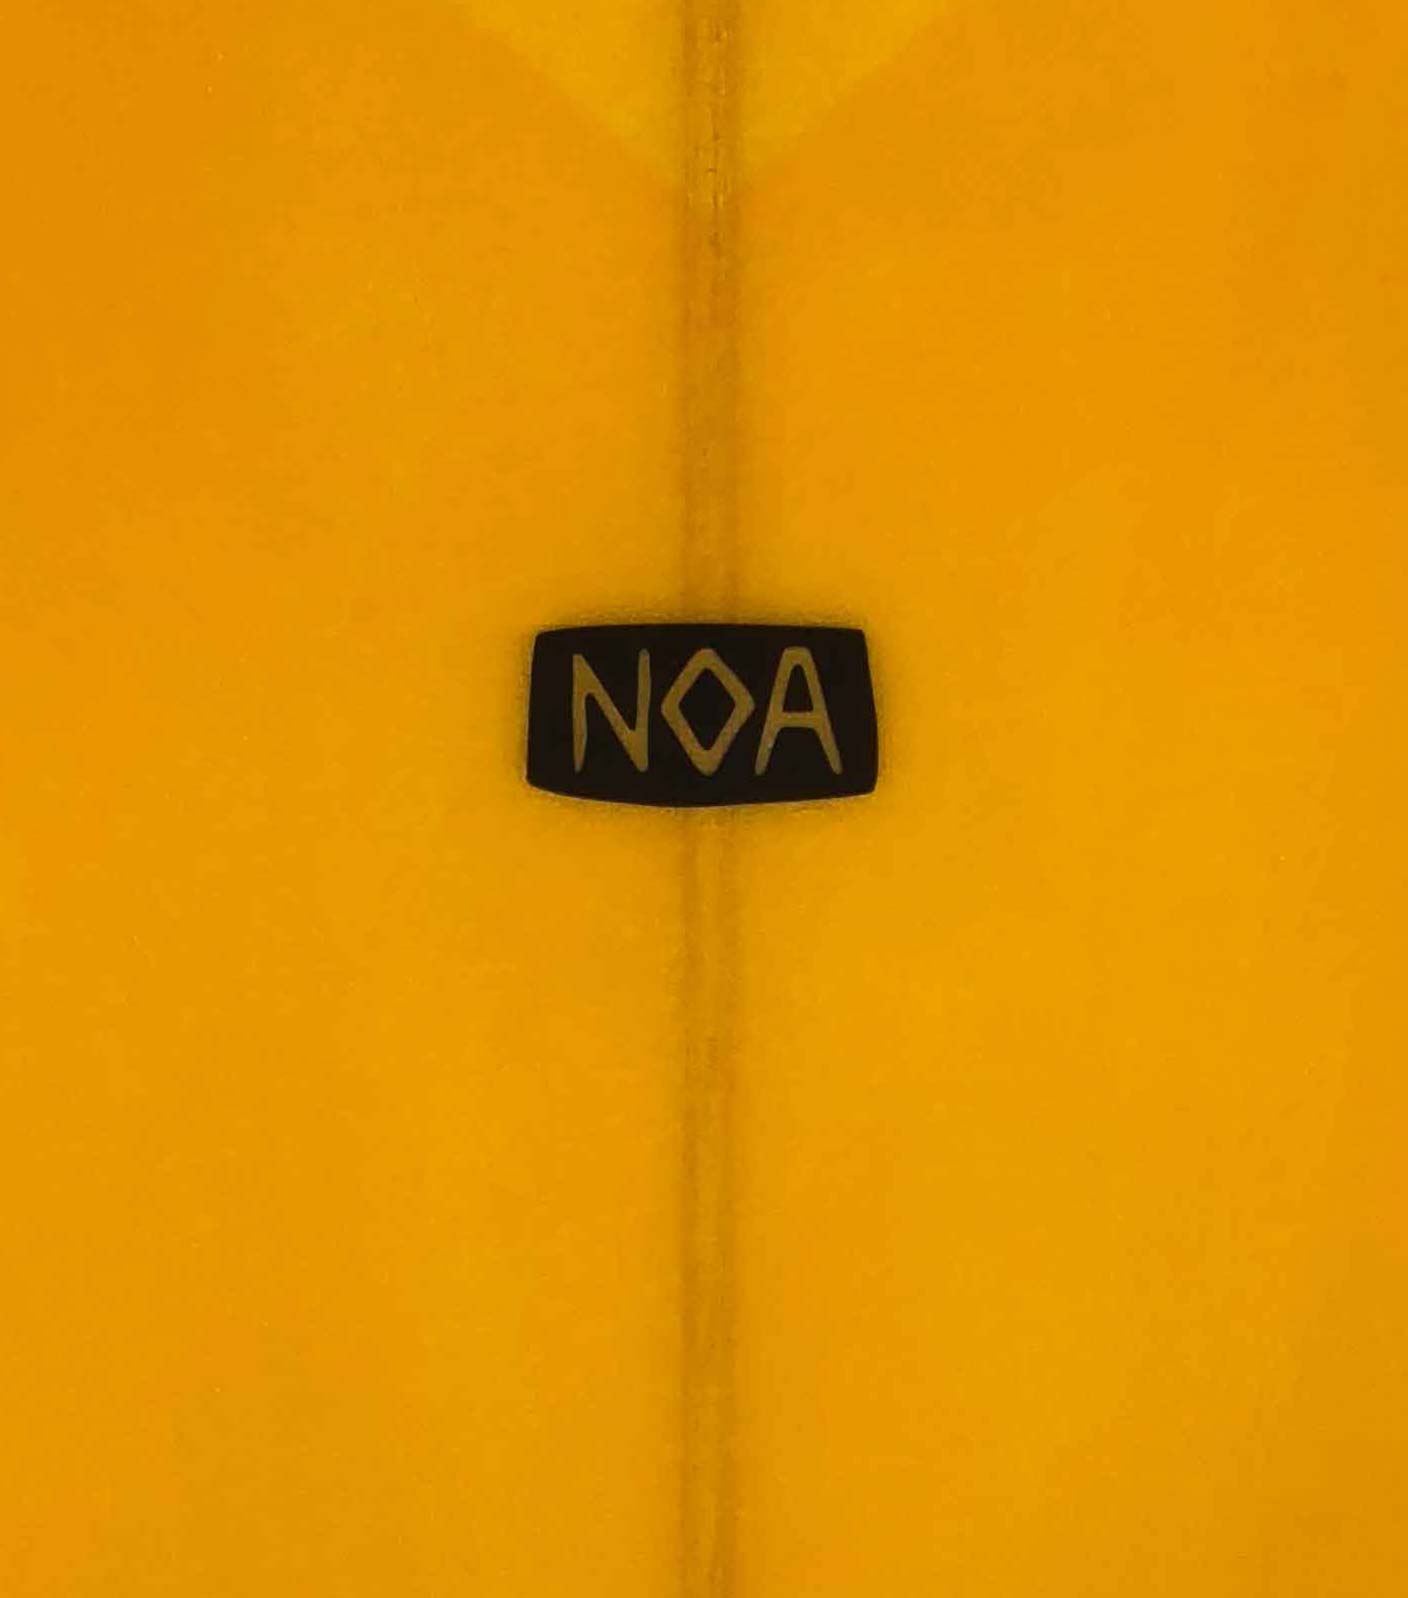 The NOA Surfboards logo on an orange surfboard.